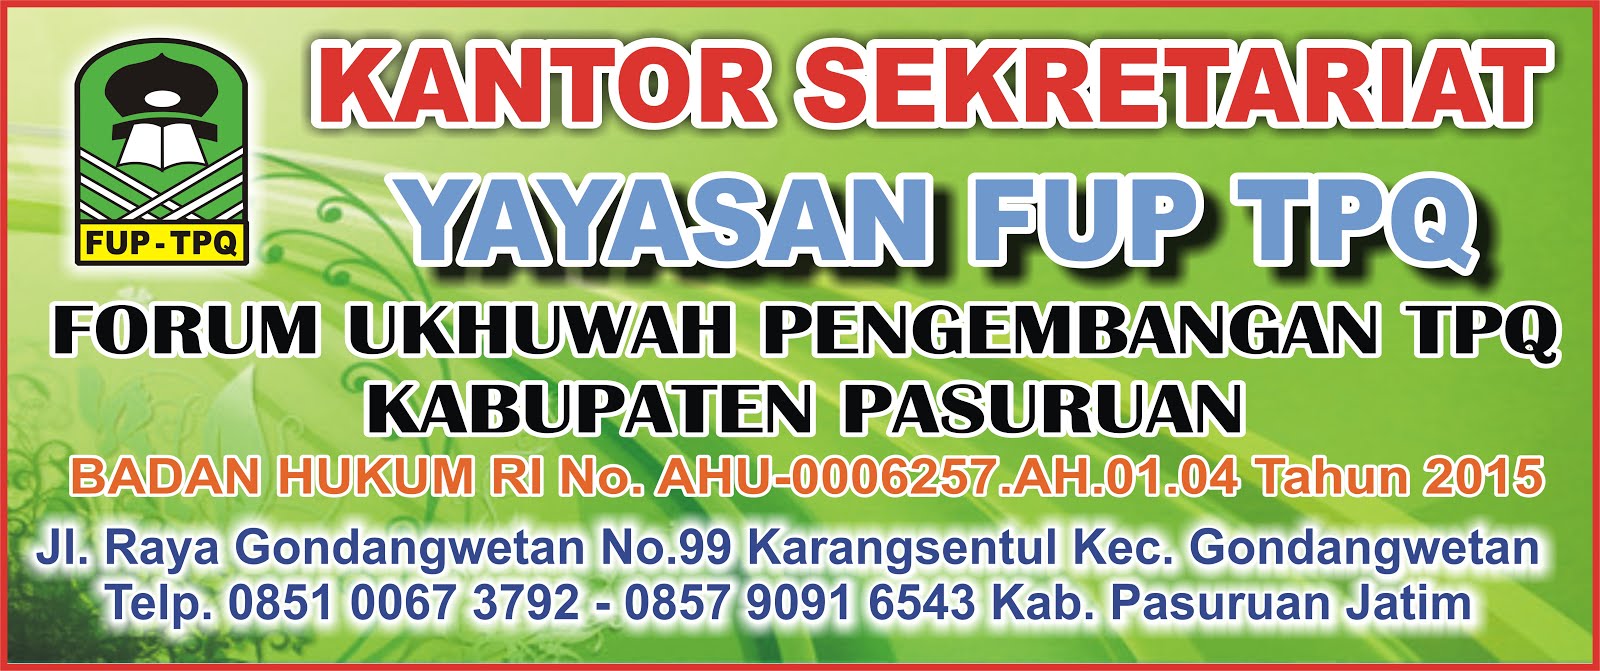 Yayasan FUP TPQ Kab Pasuruan